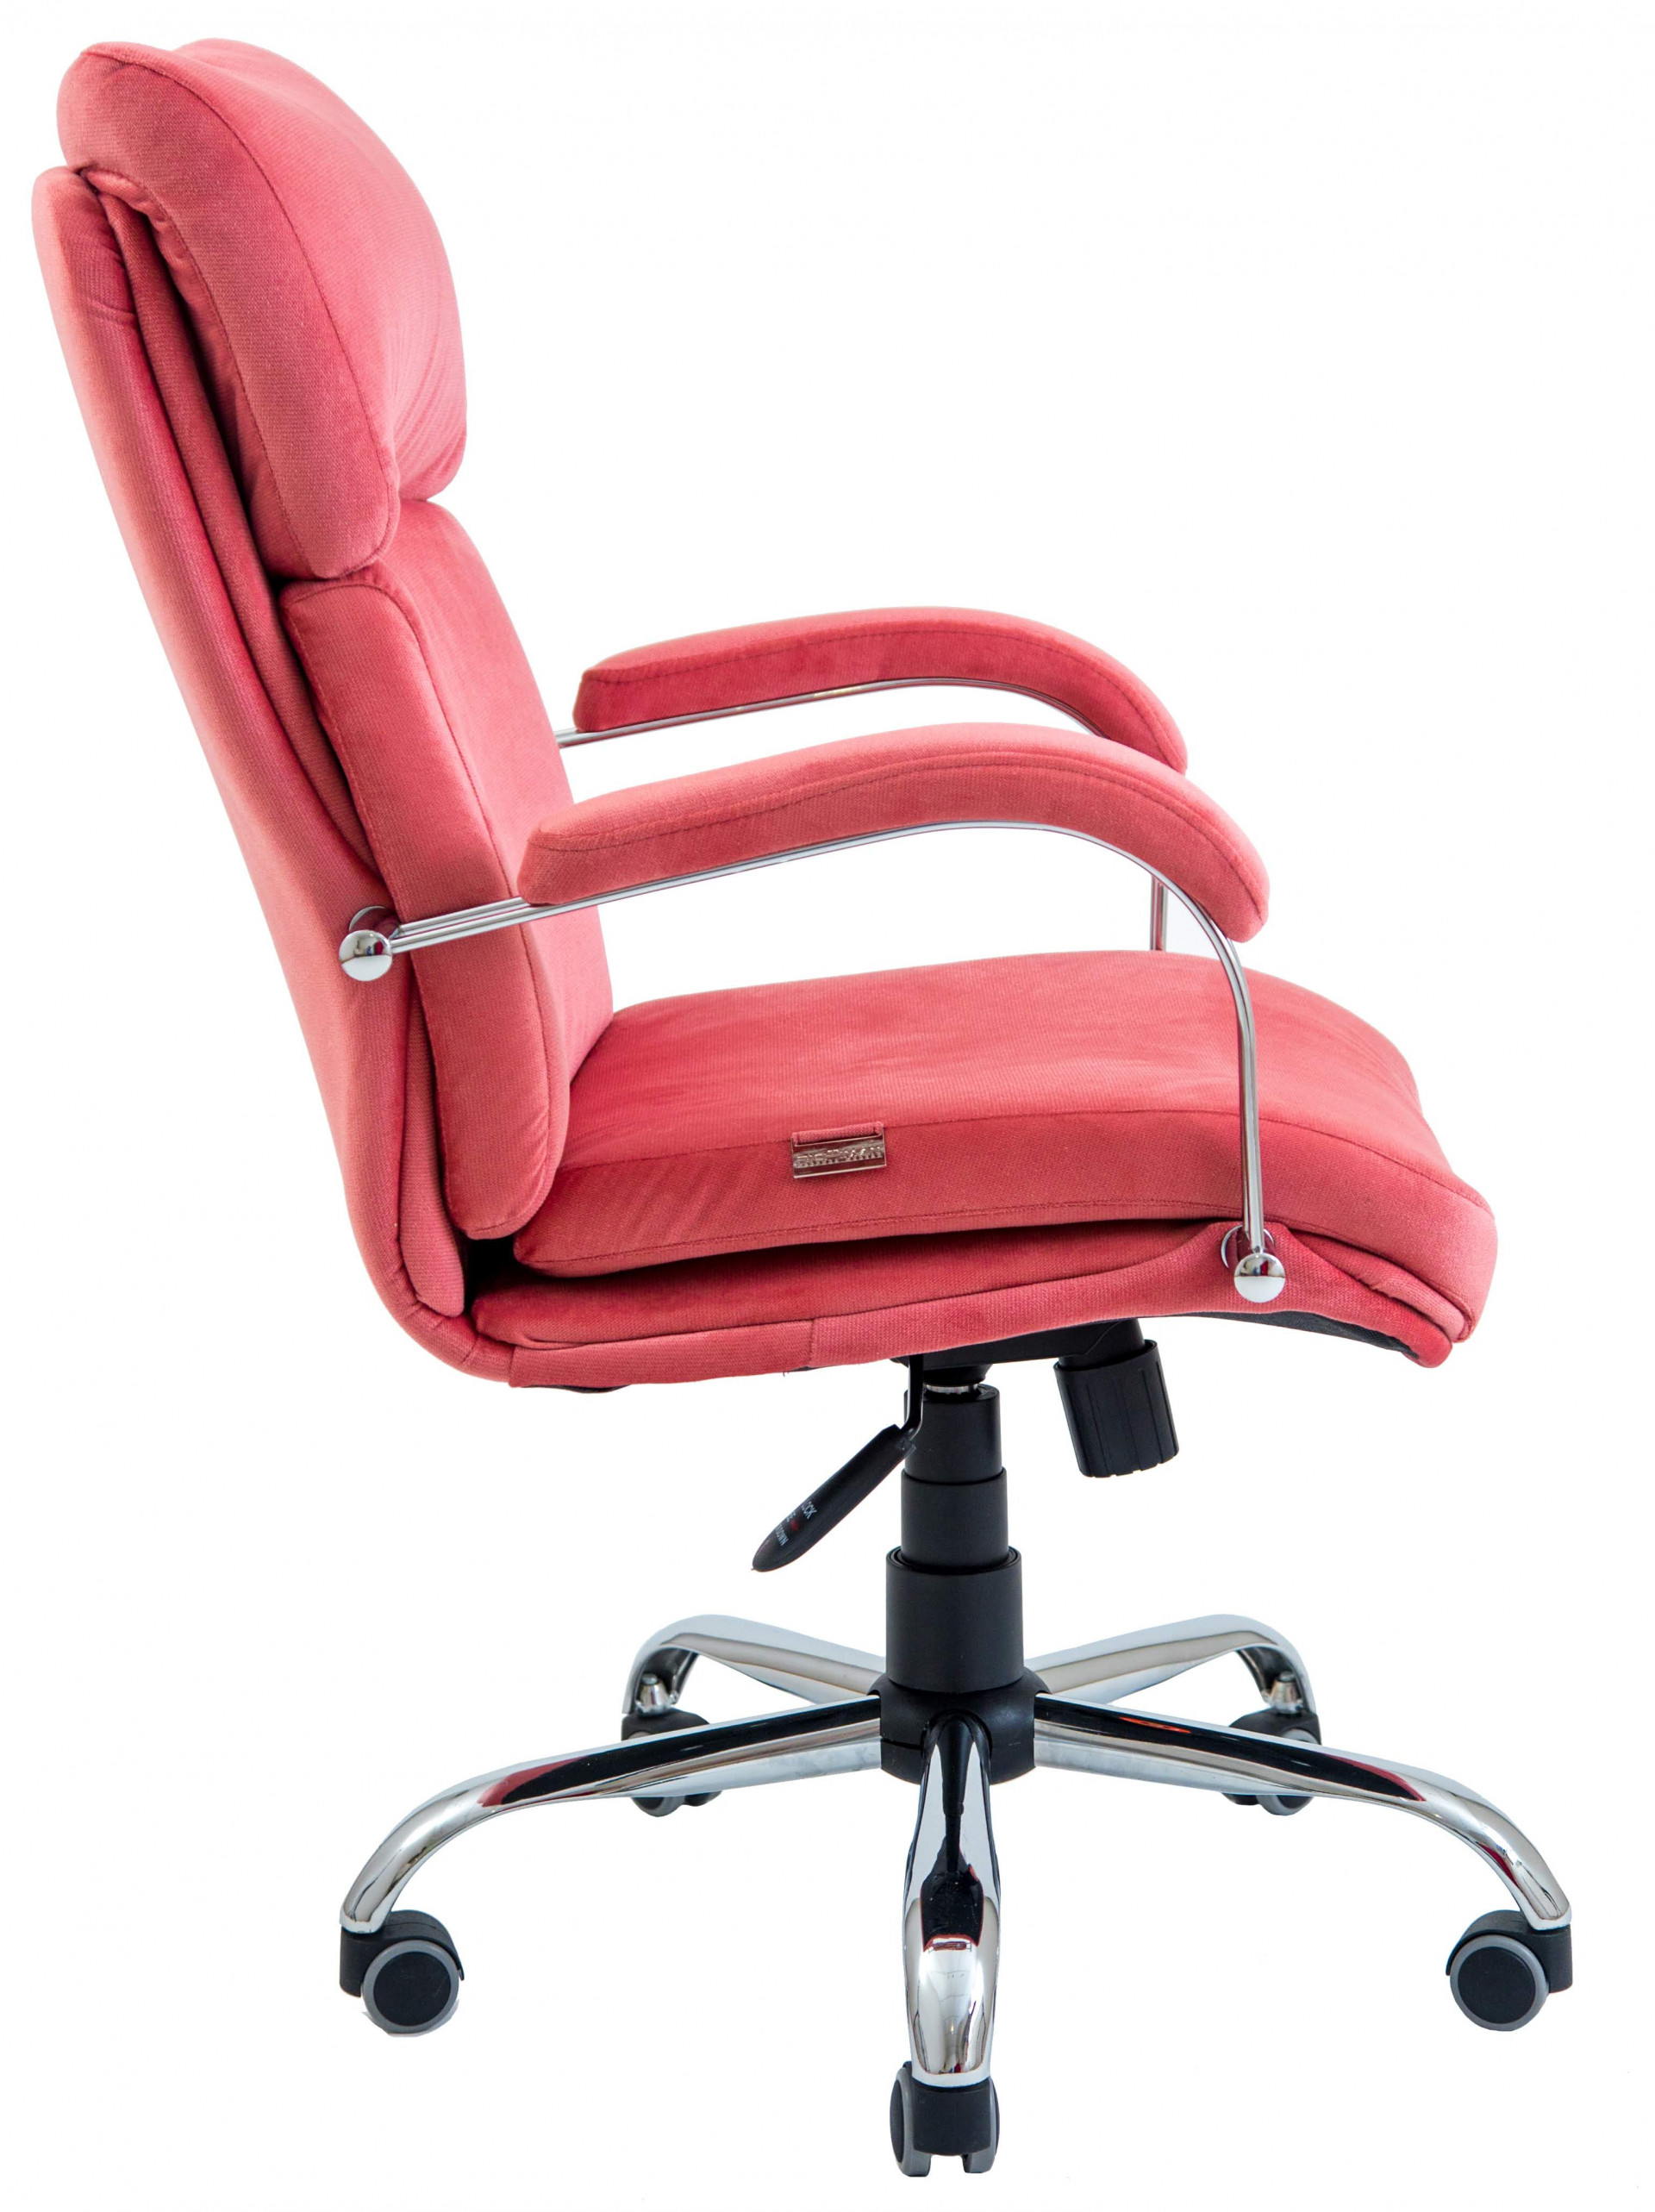 Кресло офисное  RCH- Дакота хром